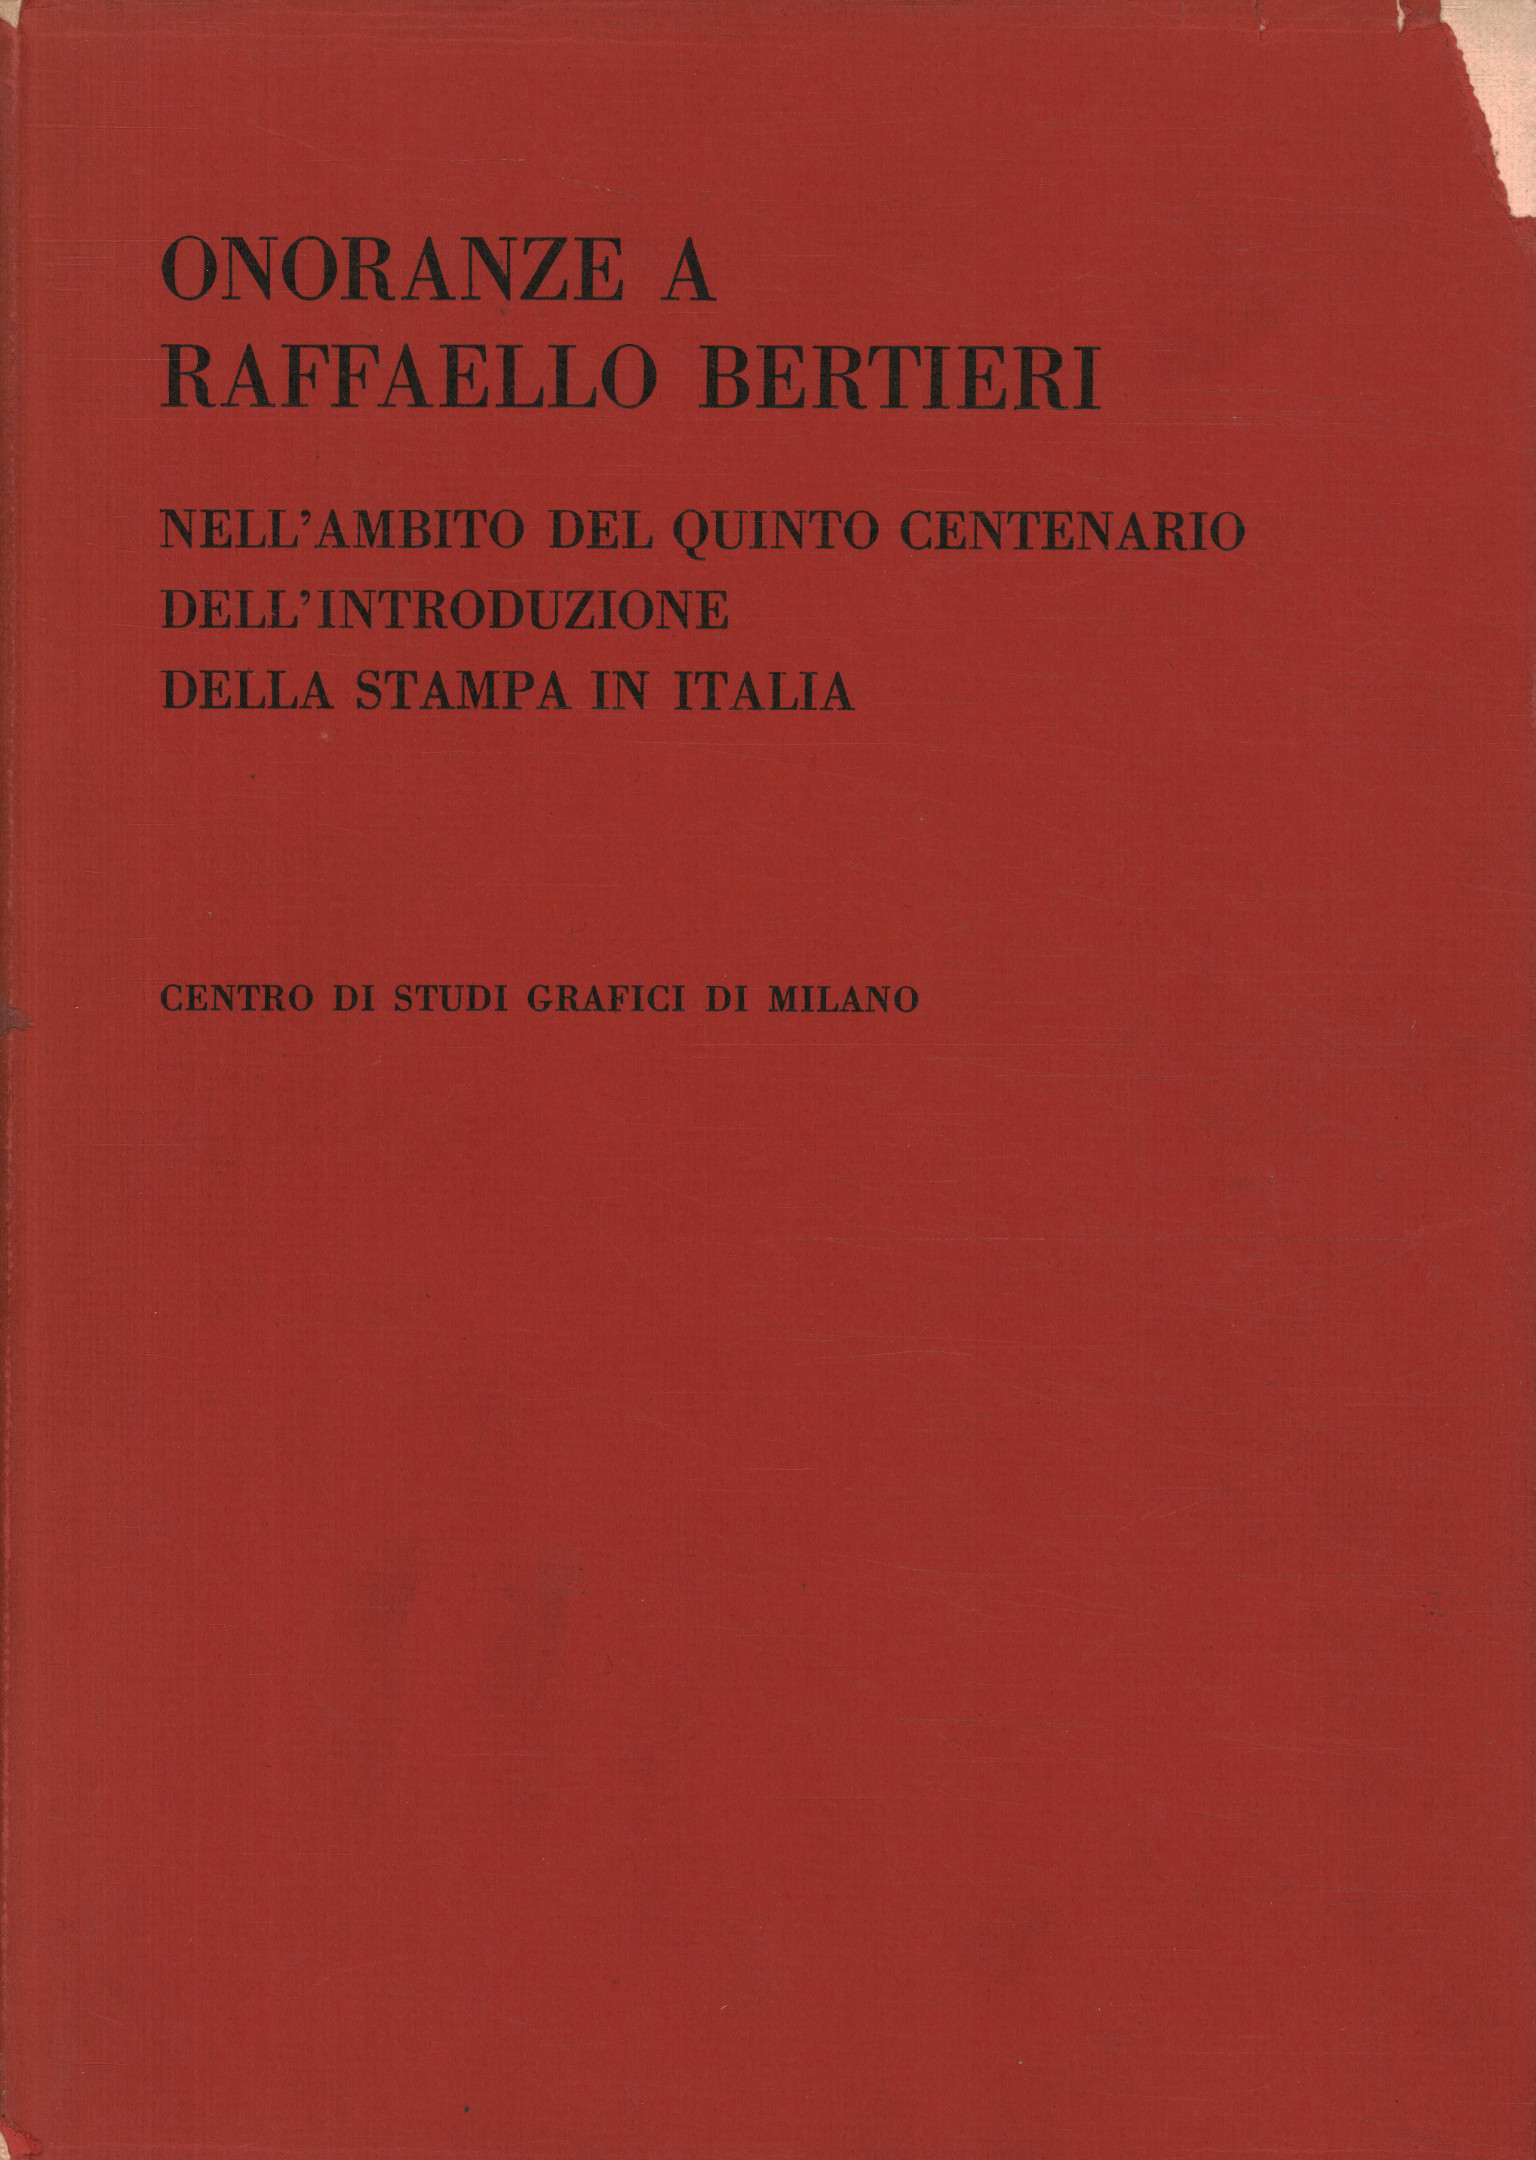 Ehrungen an Raffaello Bertieri im Apostro